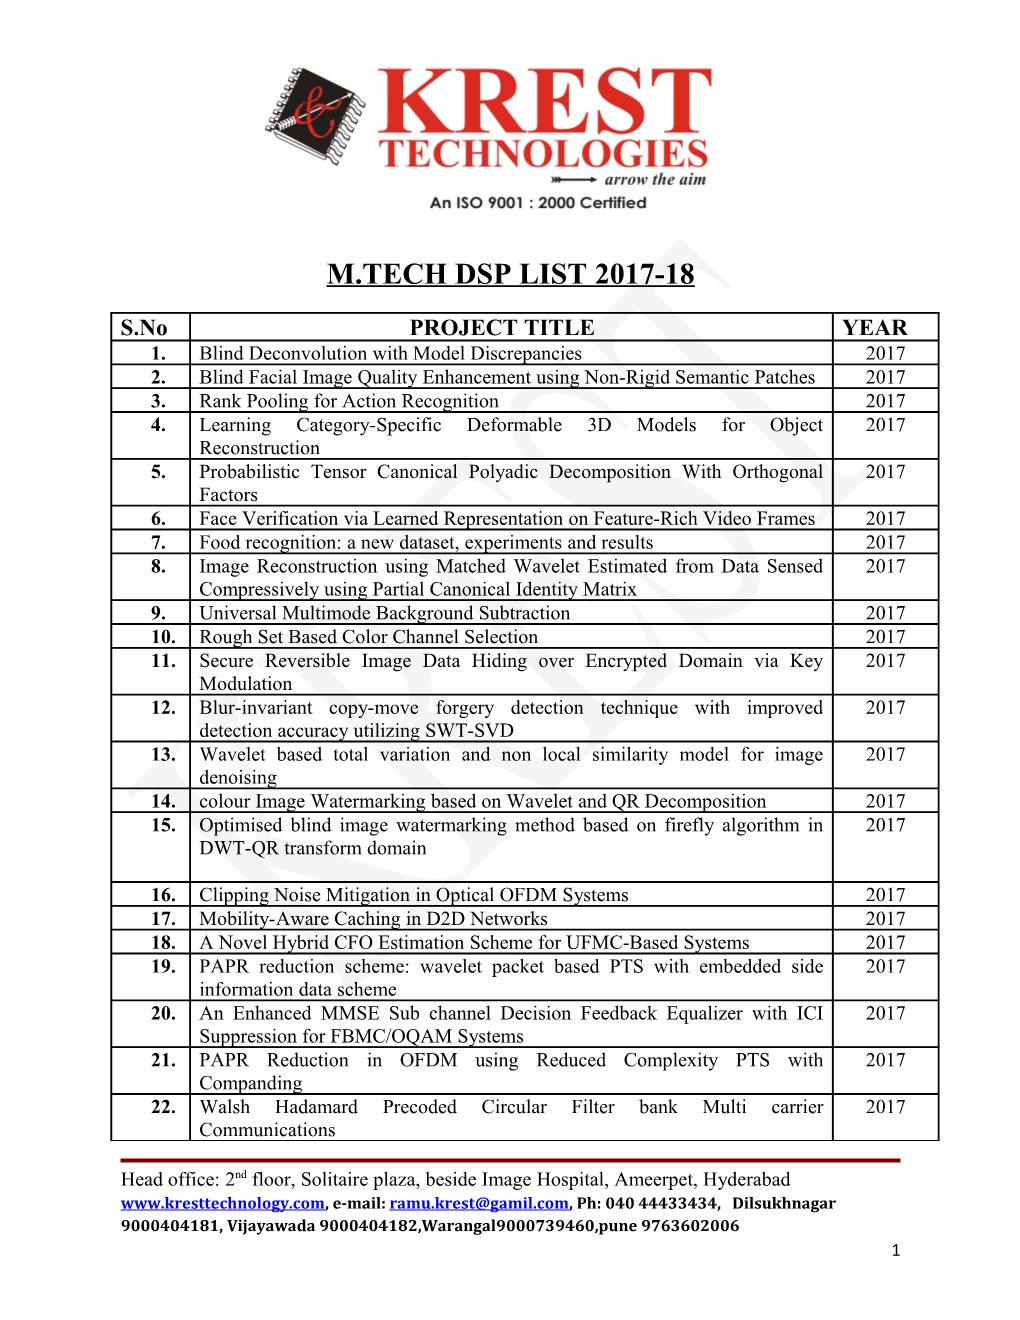 M.Tech Dsp List 2017-18